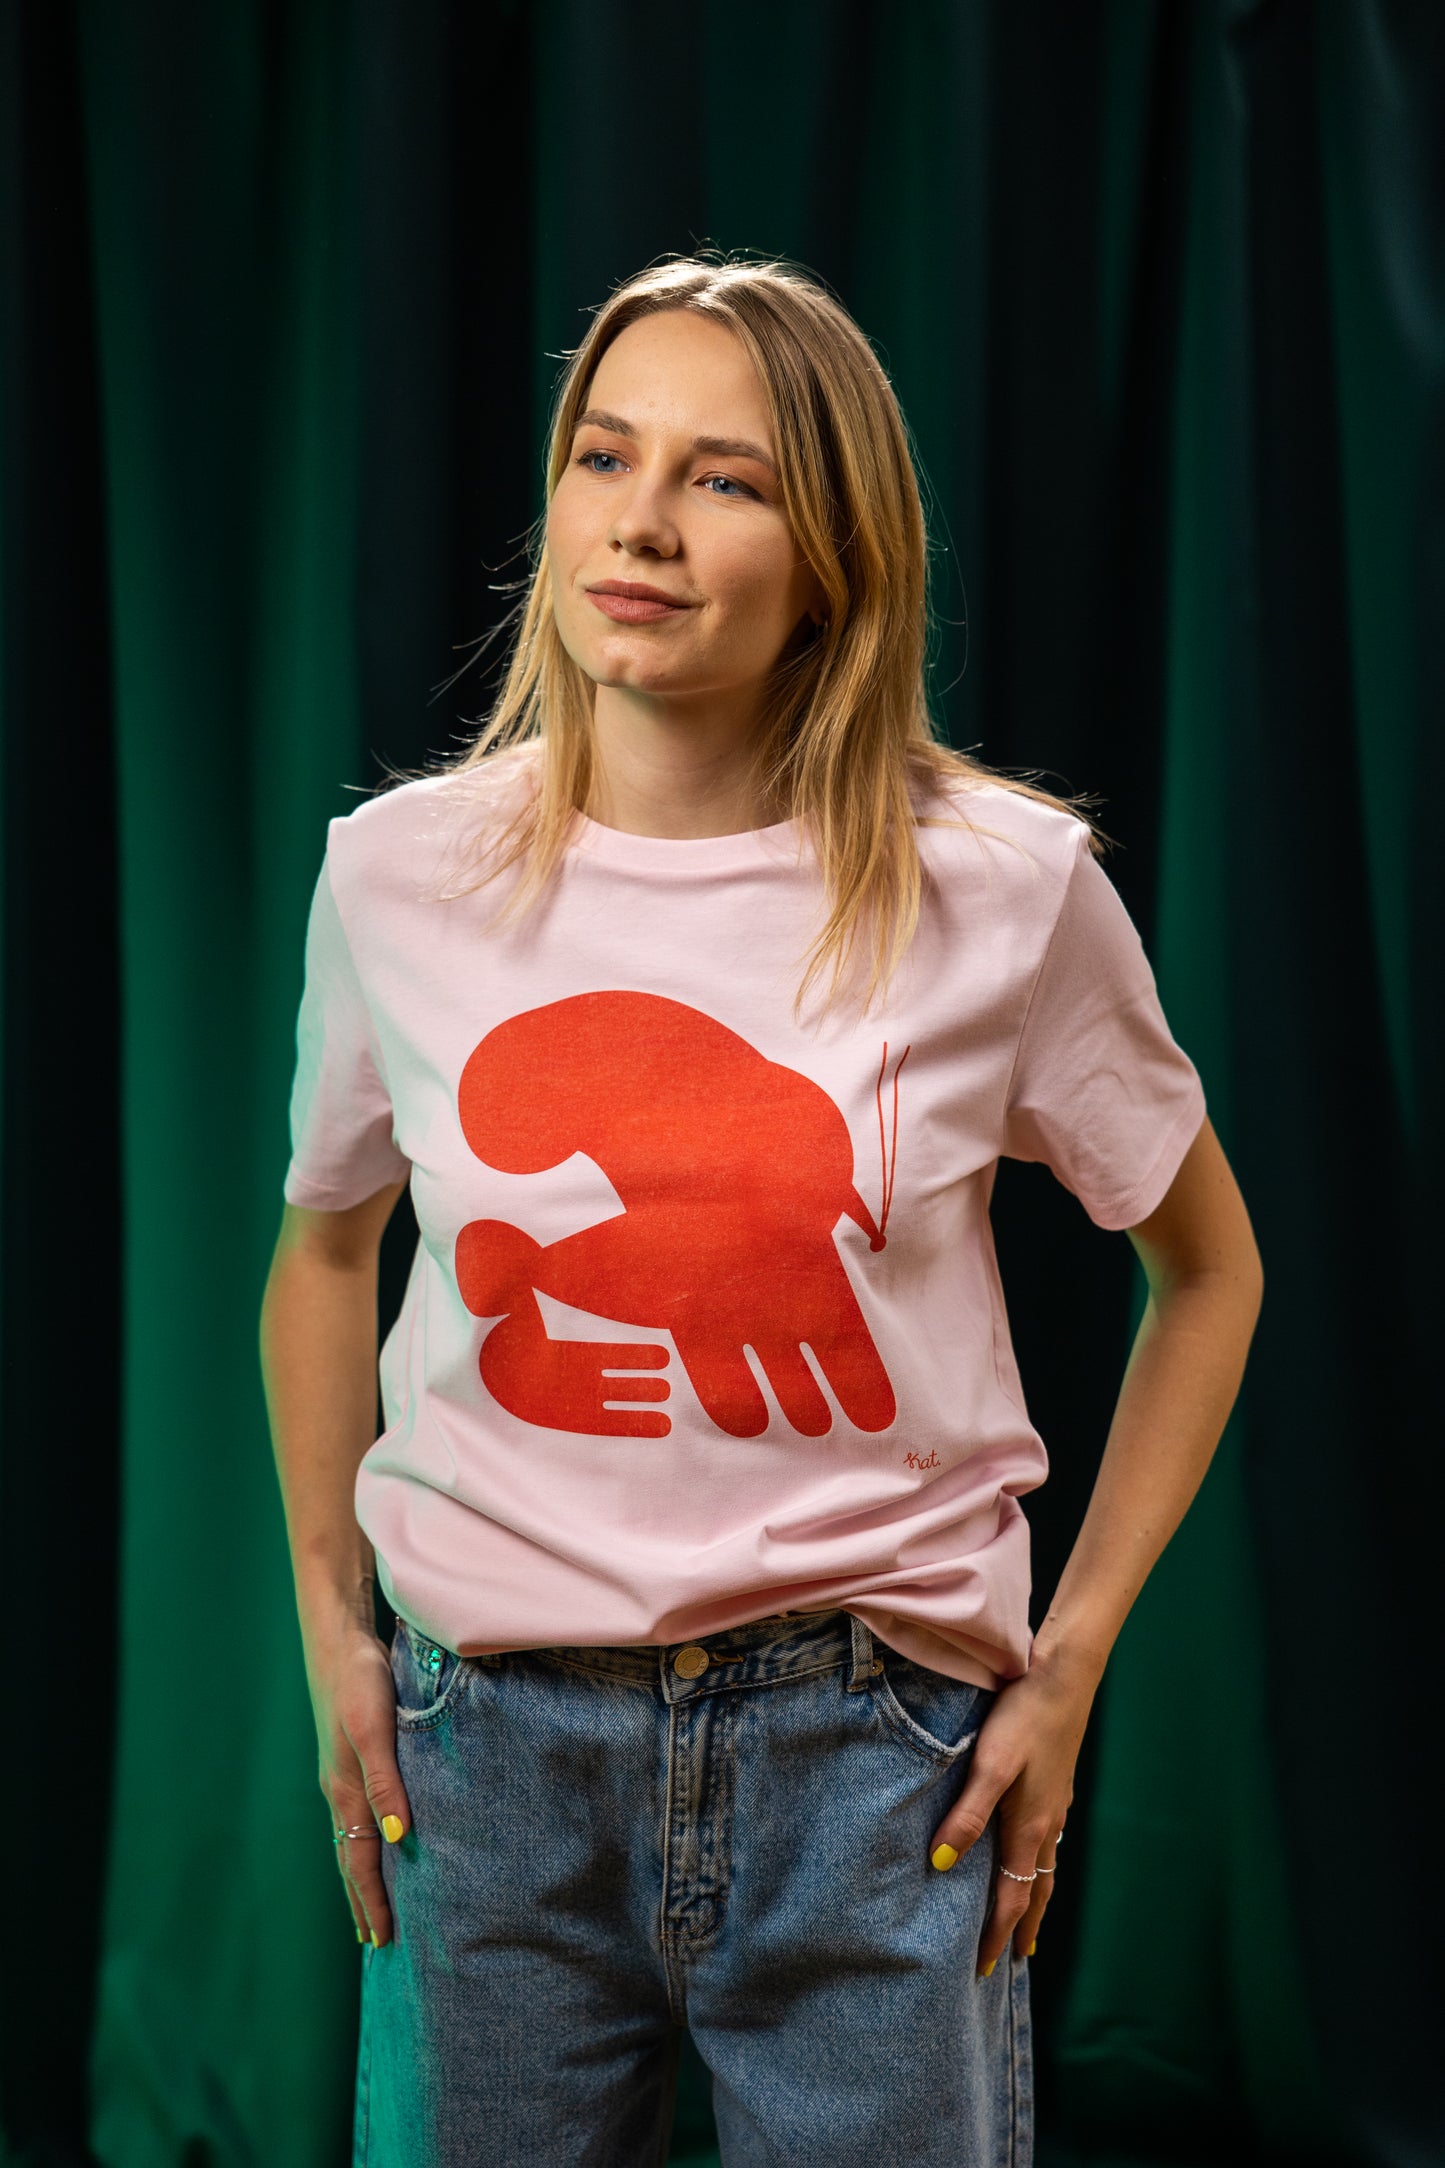 Marškinėliai su Kat Bielobrova iliustracija